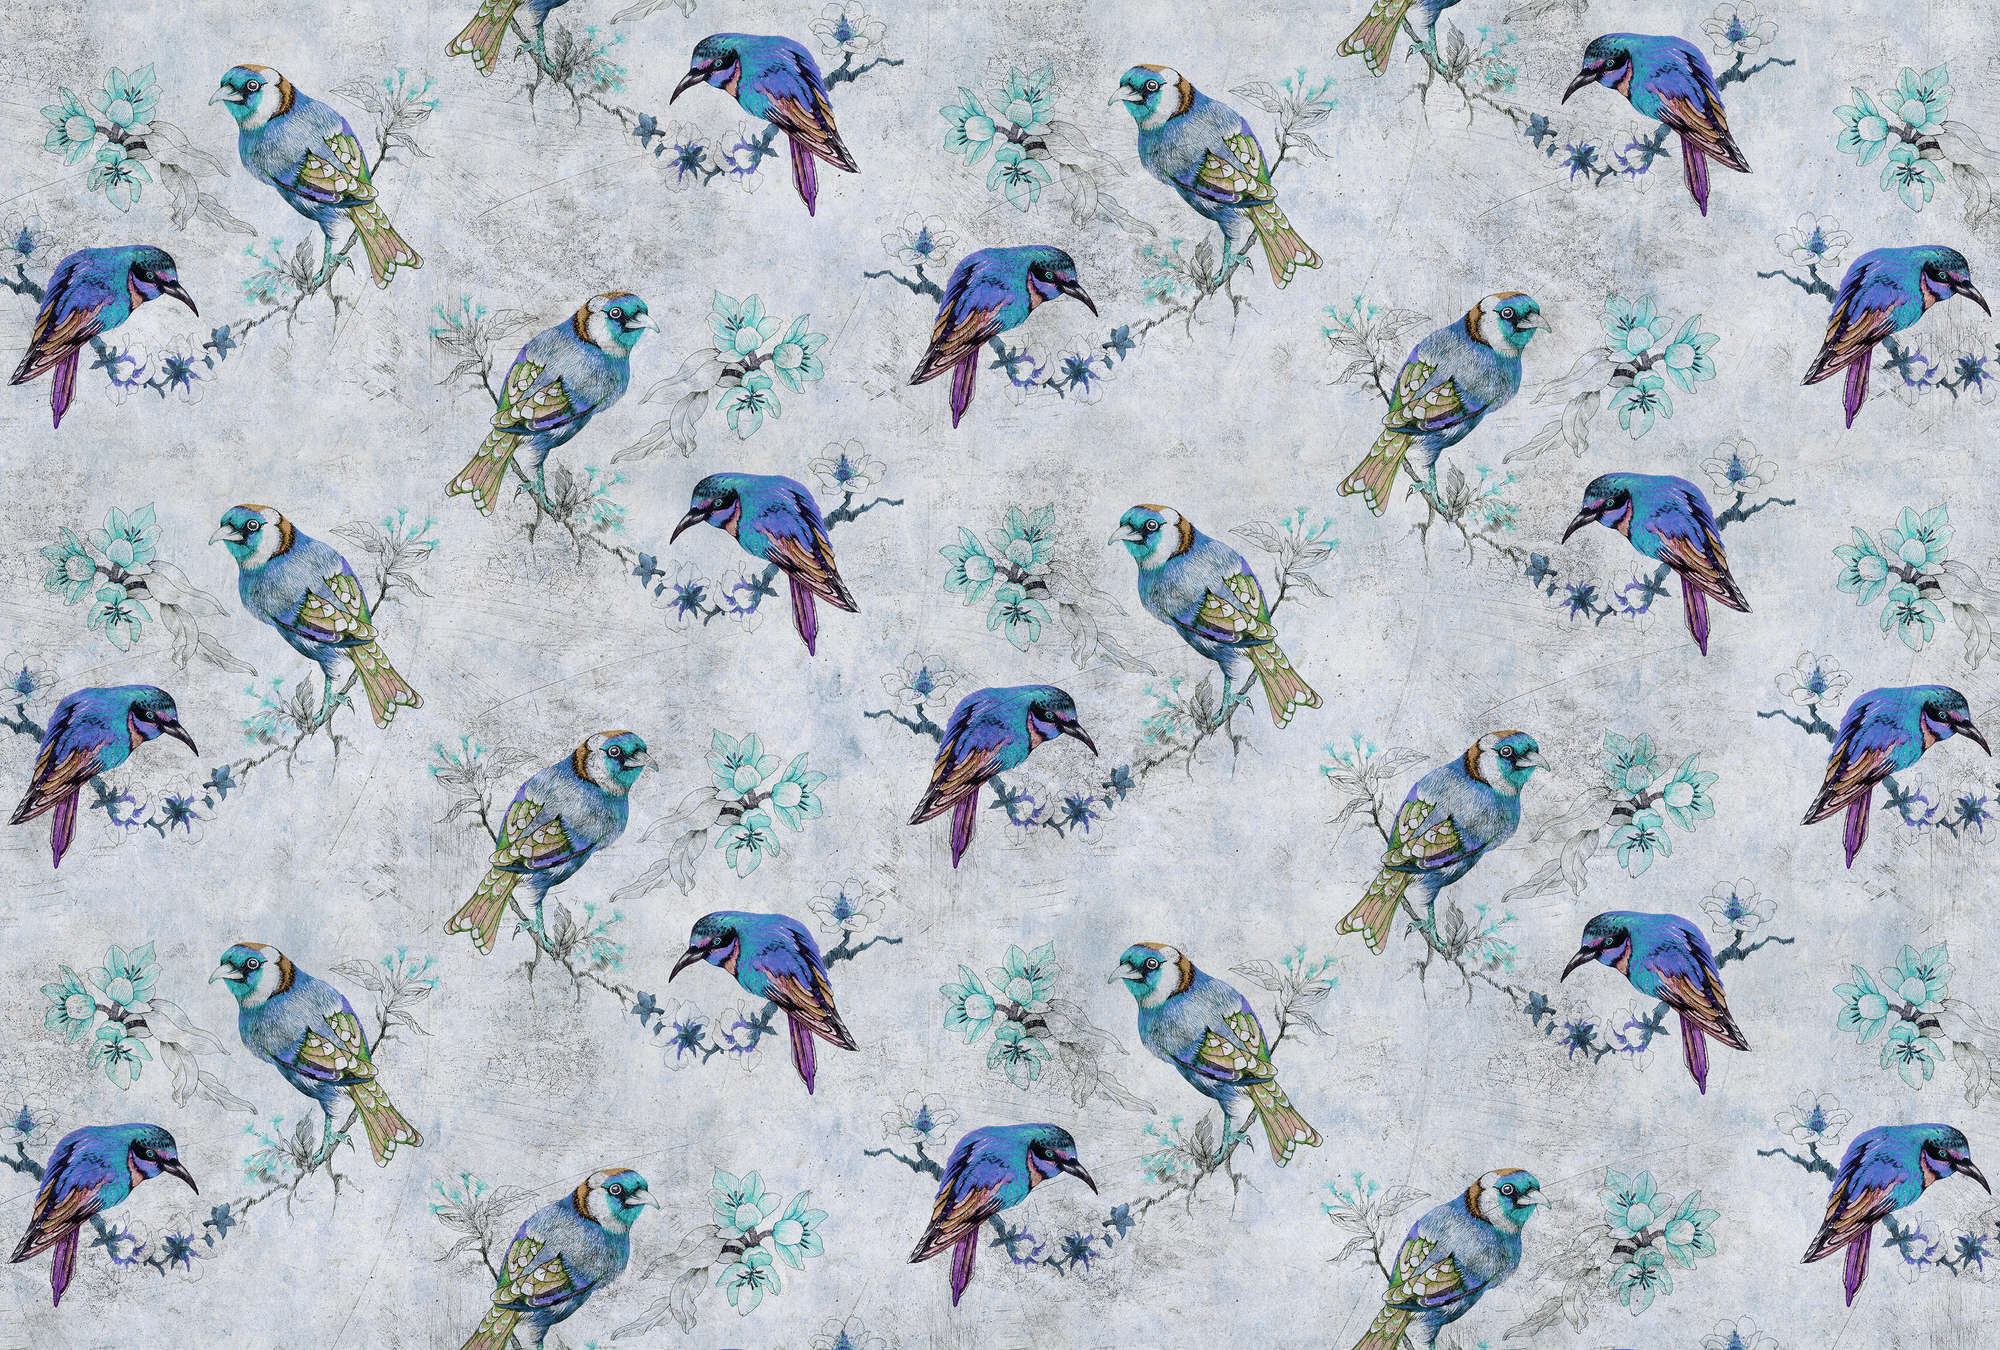             Love birds 1 - Digital behang Vogelpatroon in tekenstijl in krasse textuur - Blauw, Grijs | Mat glad non-woven
        